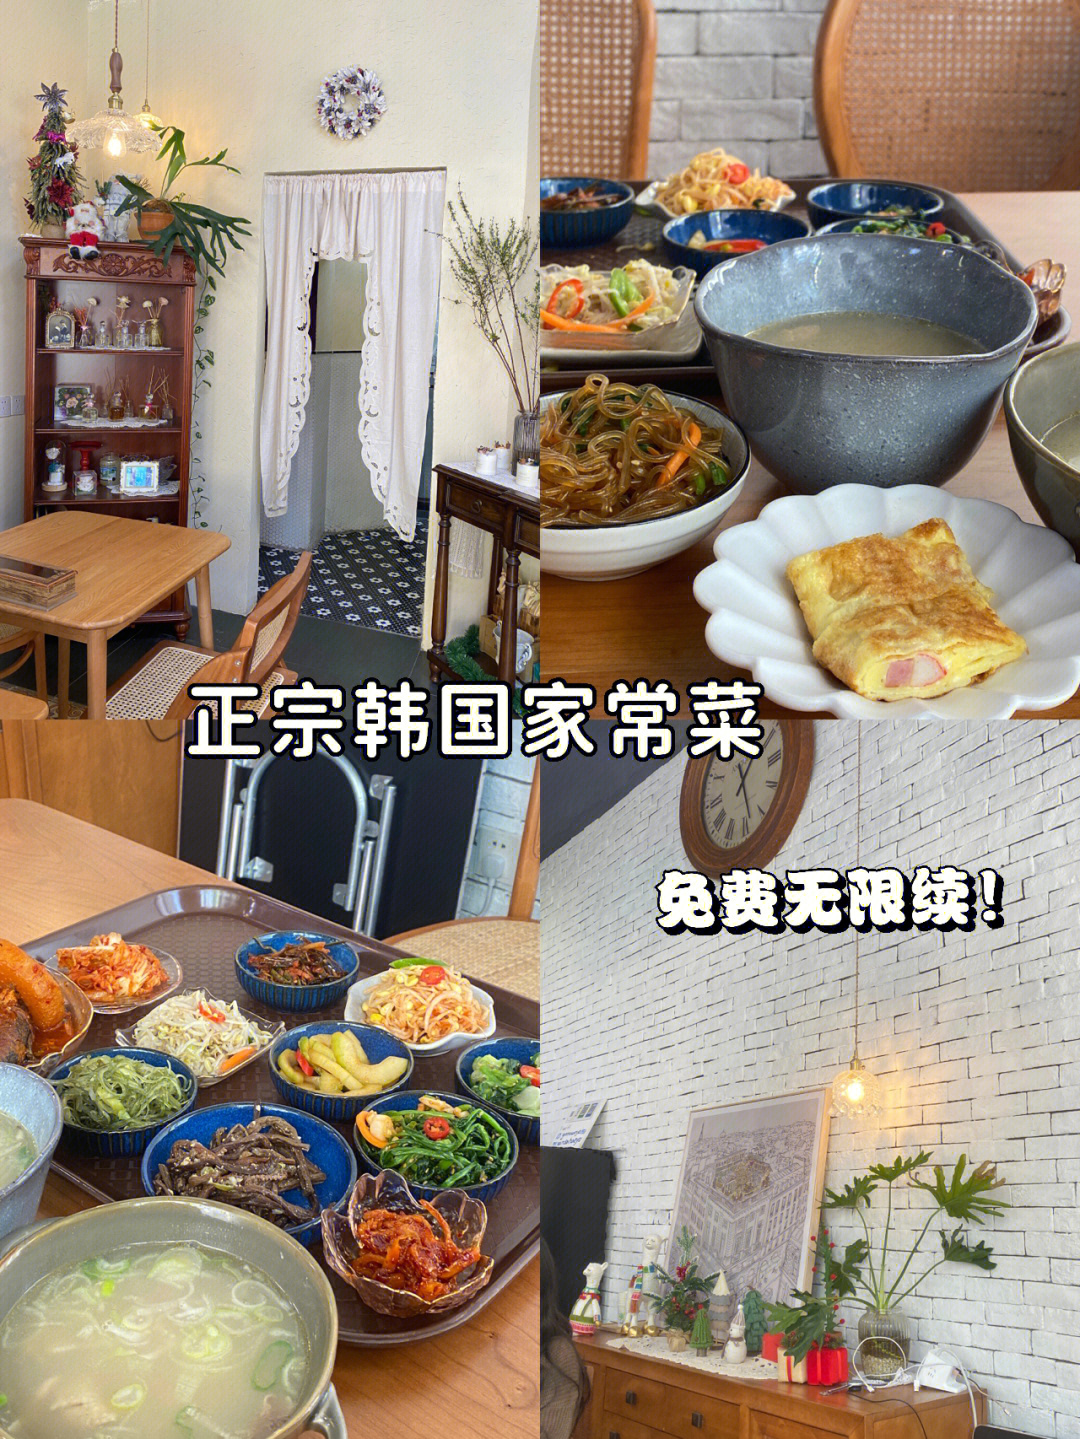 尹食堂3图片